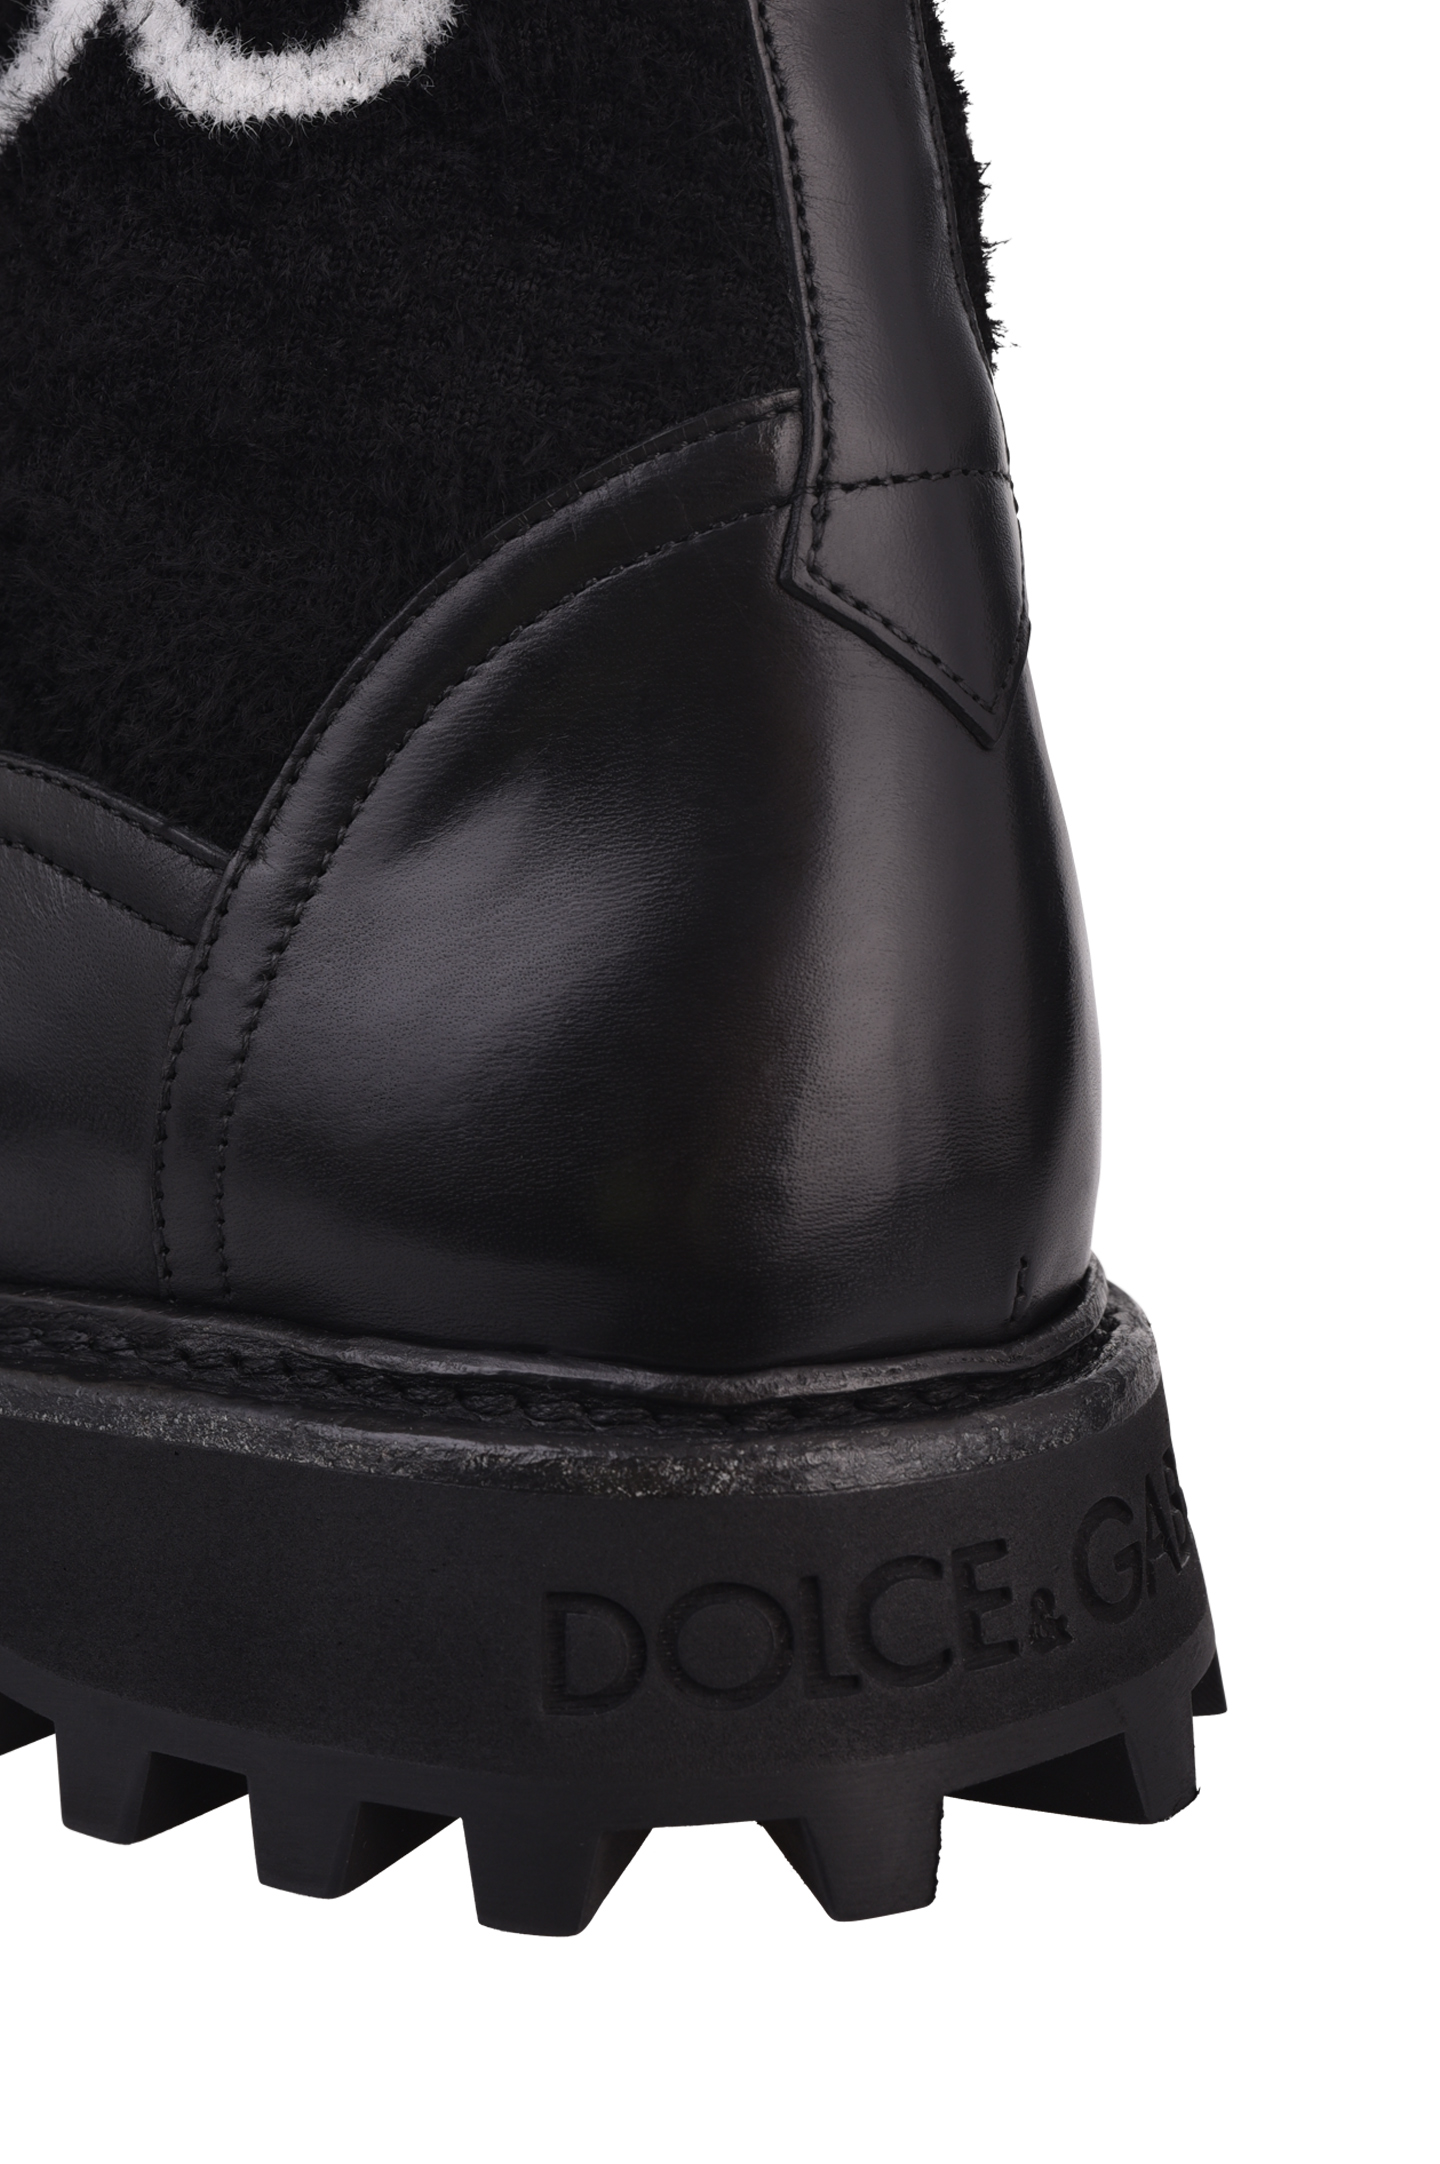 Ботинки DOLCE & GABBANA A60365 AO906, цвет: Черный, Мужской